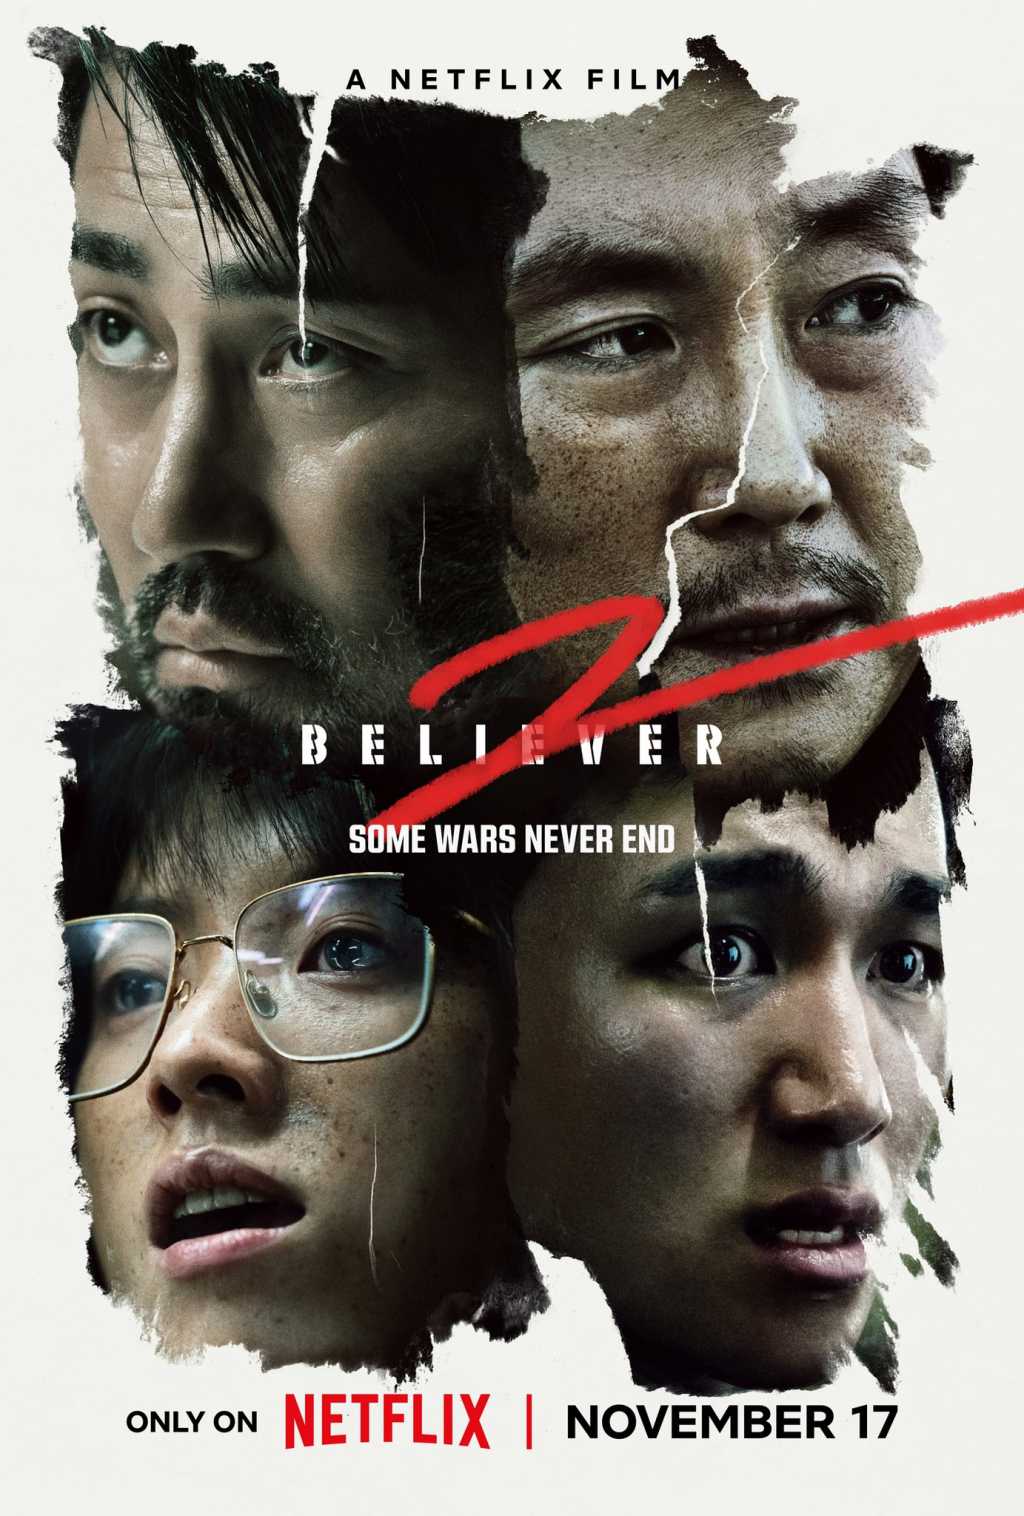 Phim mới của Han Hyo Joo trên Netflix bị khán giả chê tơi tả